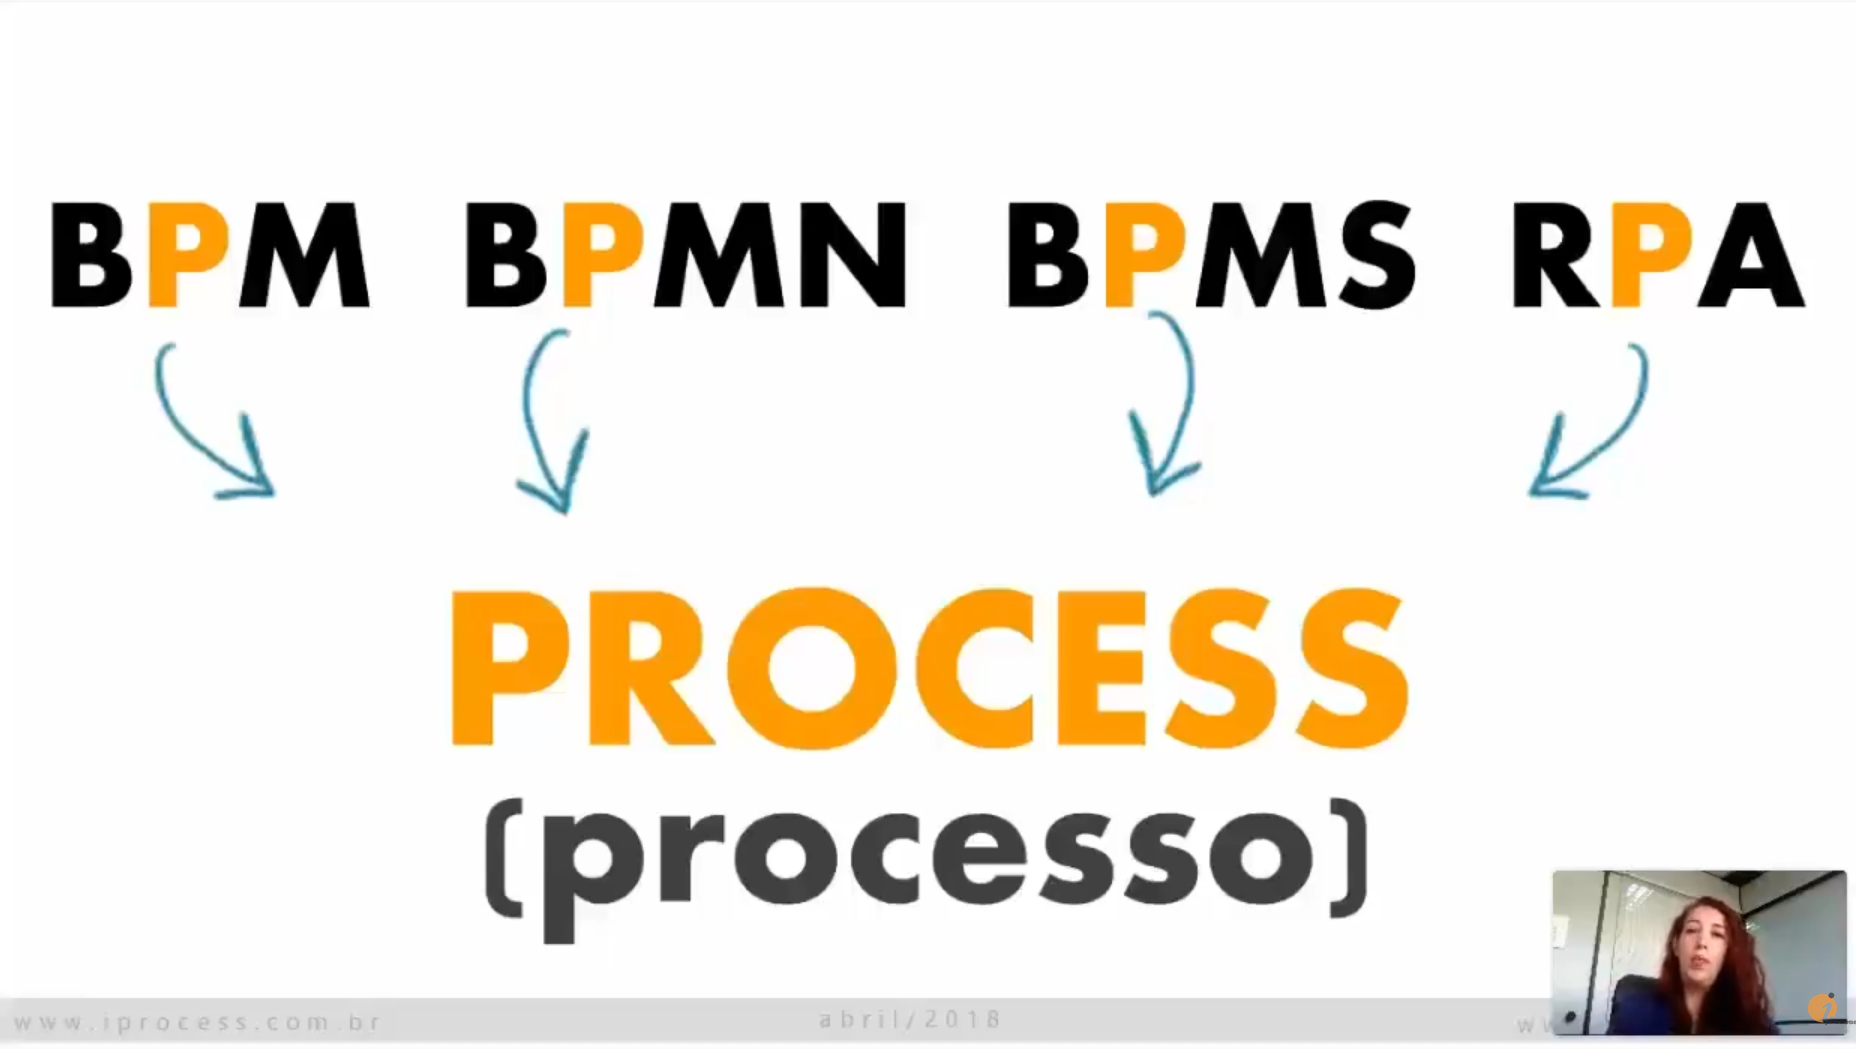 Webinar #1: Introdução à notação BPMN [Webinares iProcess 2014